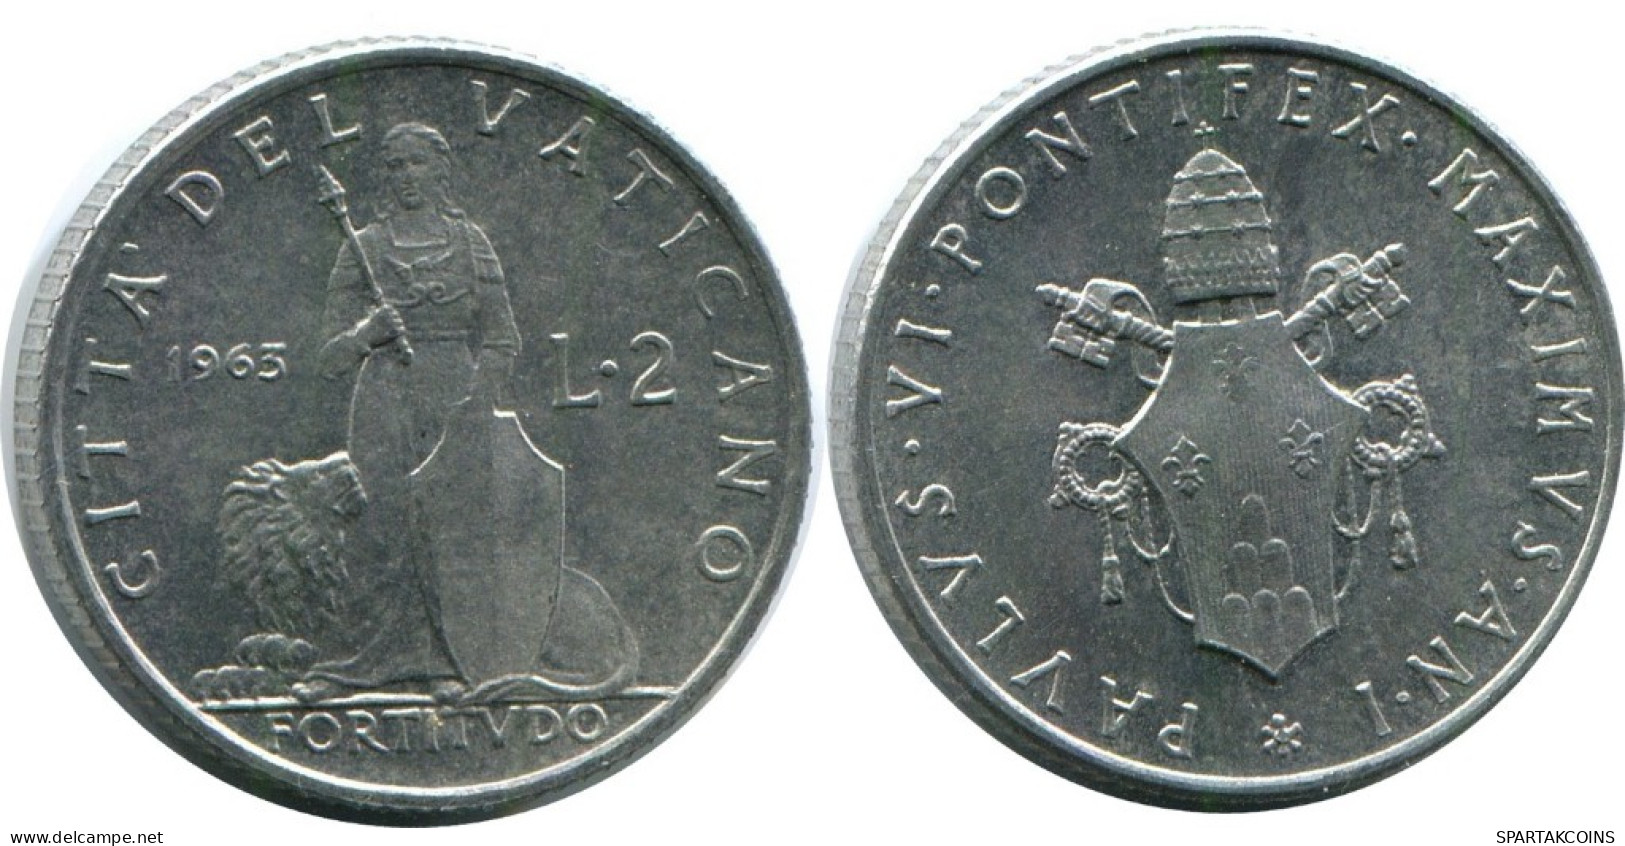 2 LIRE 1963 VATICAN Coin Paul VI (1963-1978) #AH378.13.U.A - Vatican